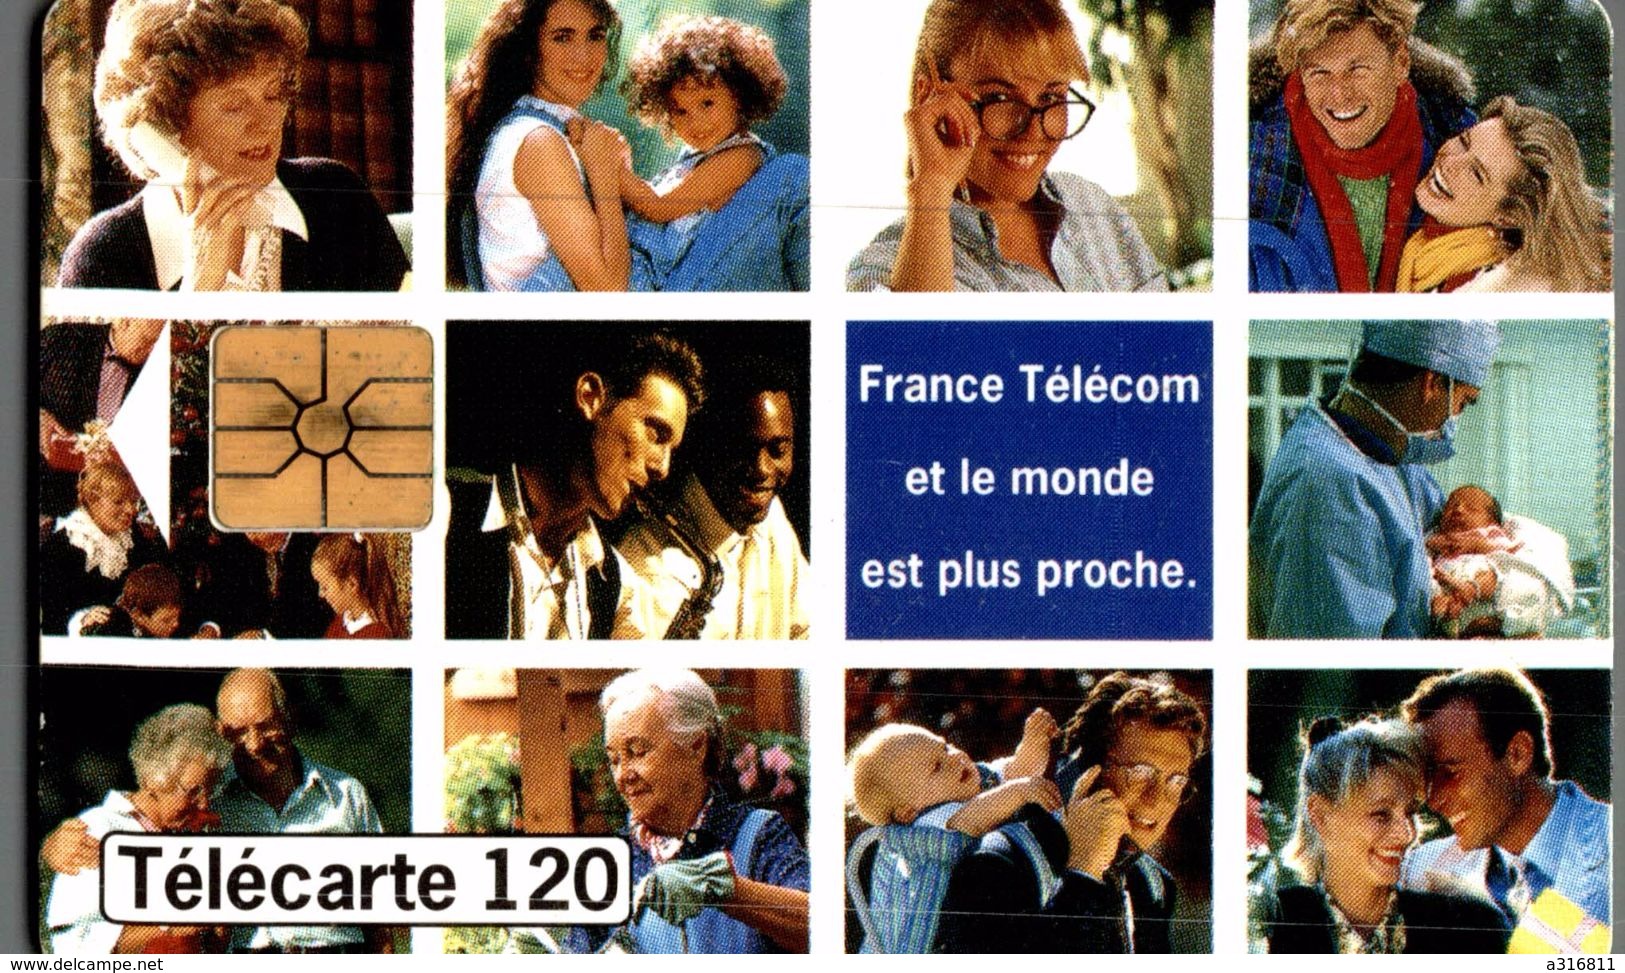 France Telecom - 120 Unidades